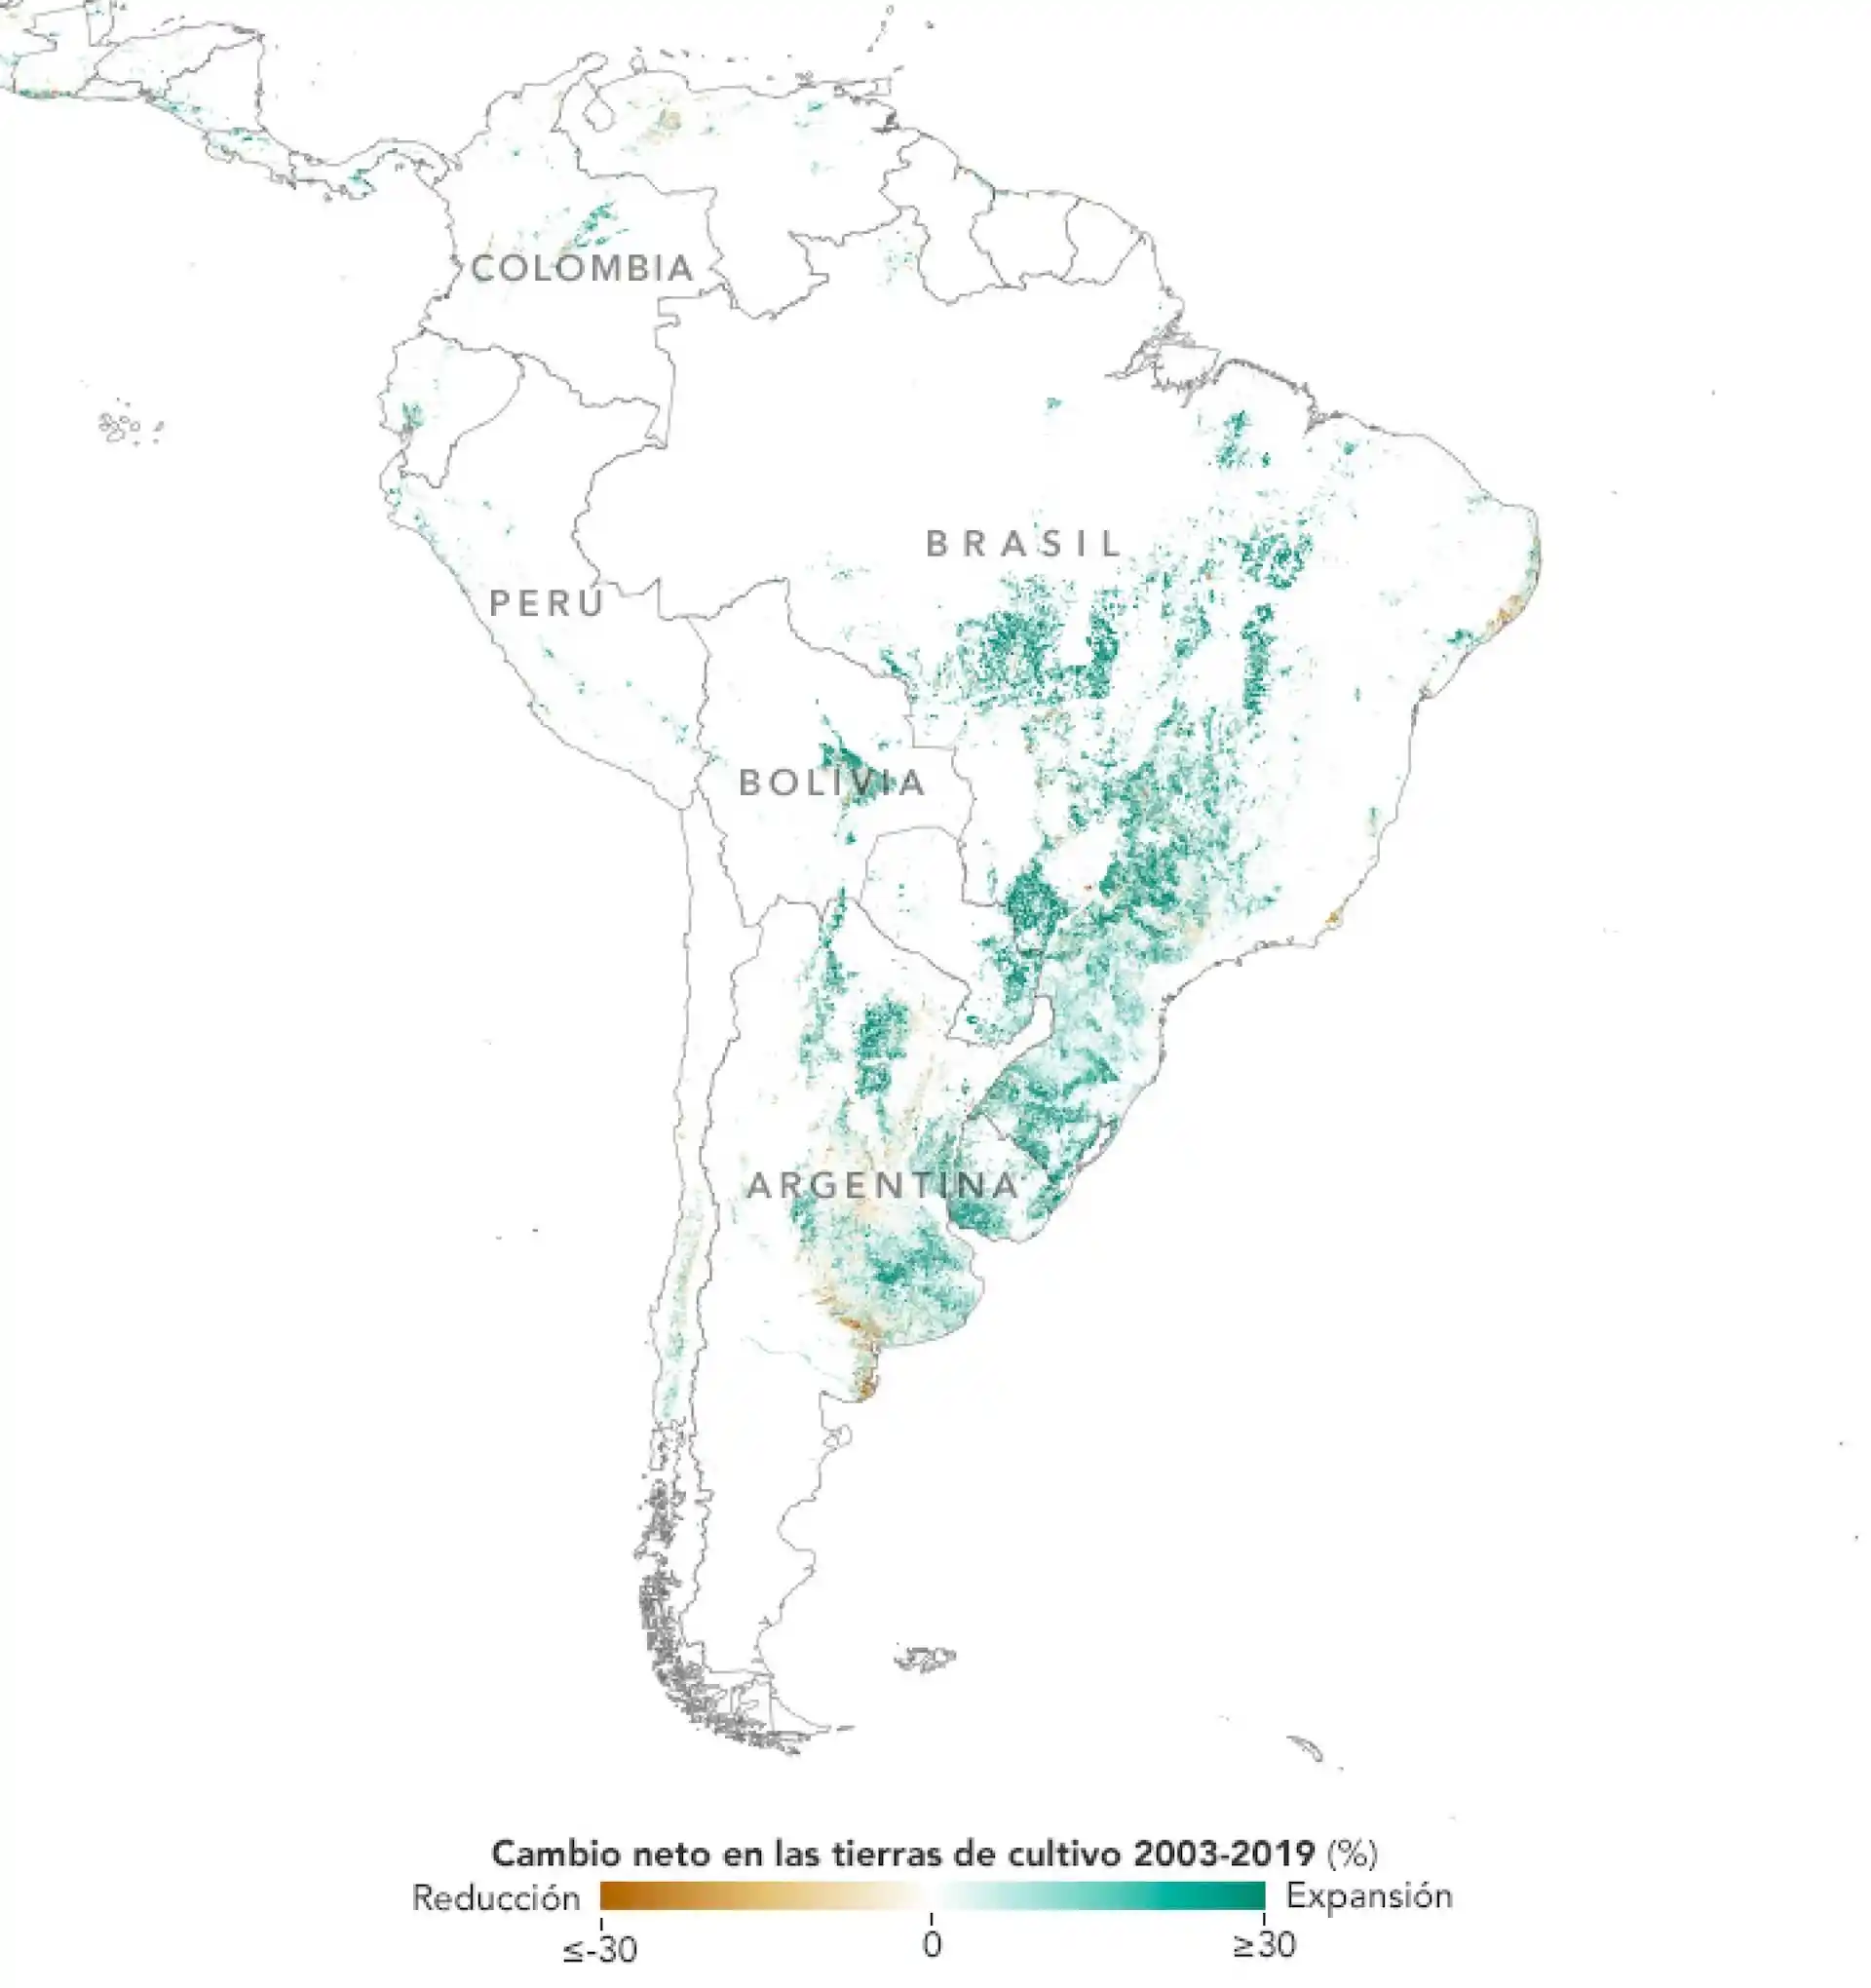 La NASA muestra como crece la siembra de la soja en Latinoamérica